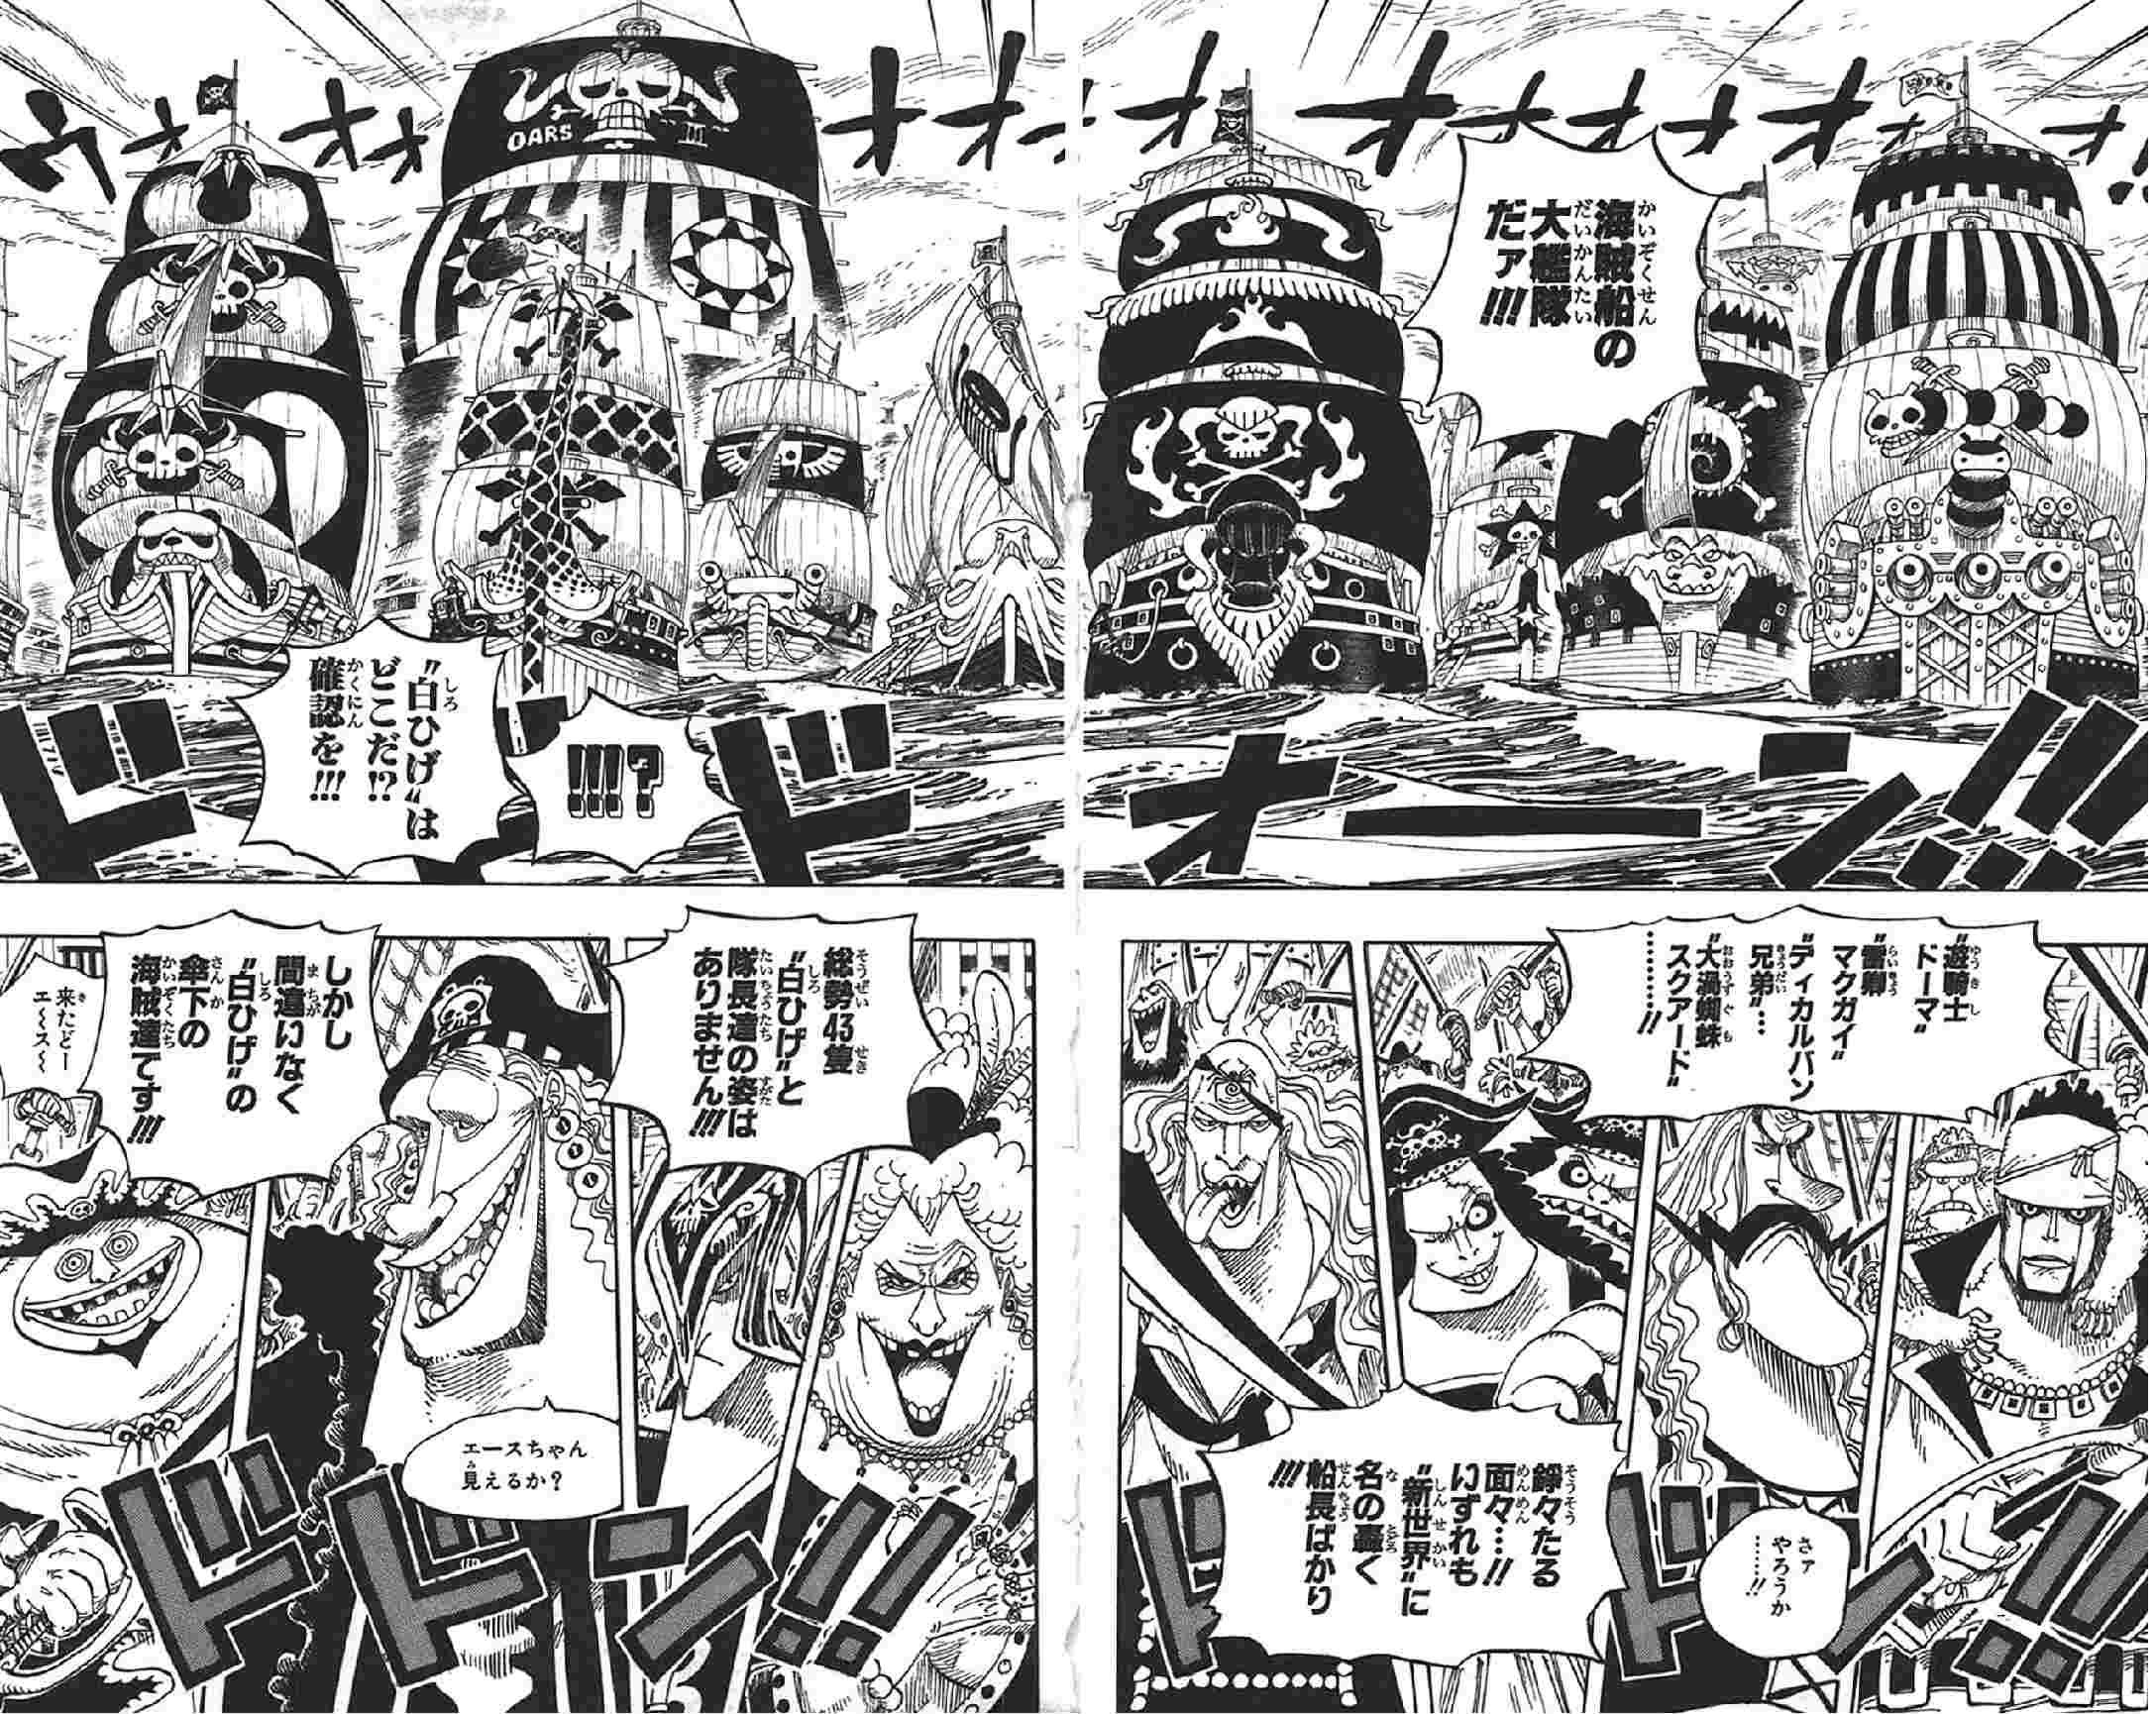 One Piece ワンピース の海賊船 軍艦 客船まとめ 4 16 Renote リノート